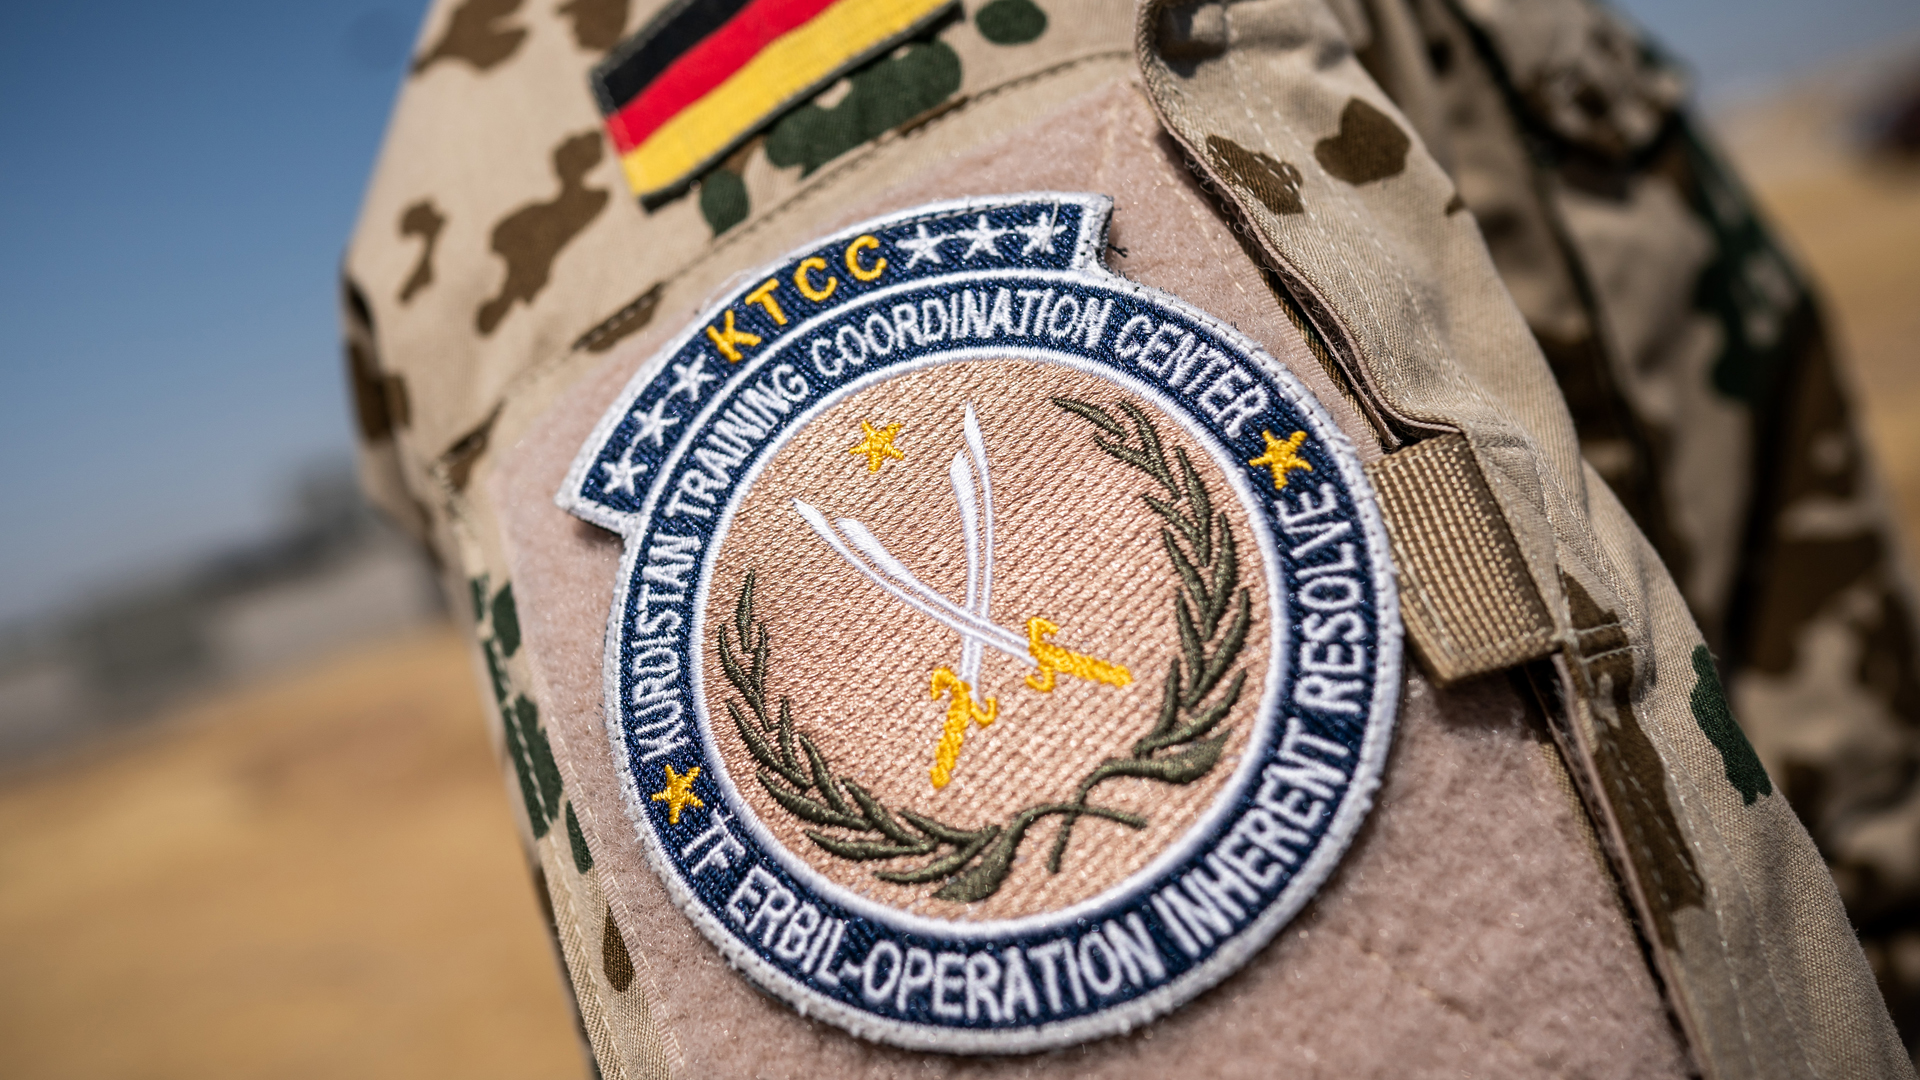 Das Schulterabzeichen der Bundeswehr Mission "Operation Inherent Resolve". | dpa